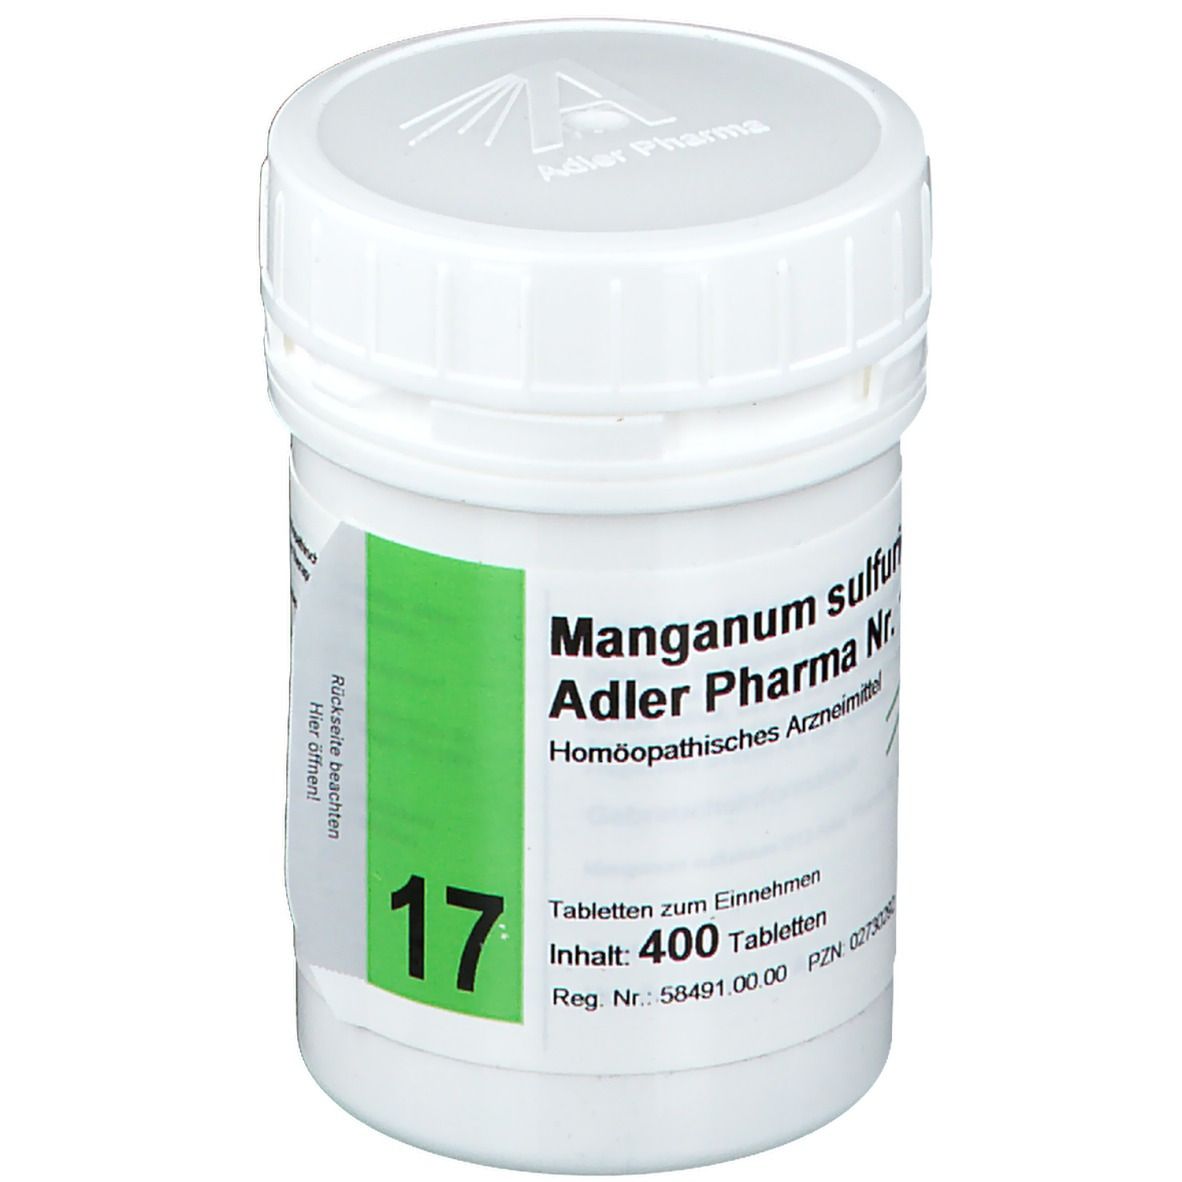 Adler Pharma Manganum sulfuricum D12 Biochemie nach Dr. Schüßler Nr. 17